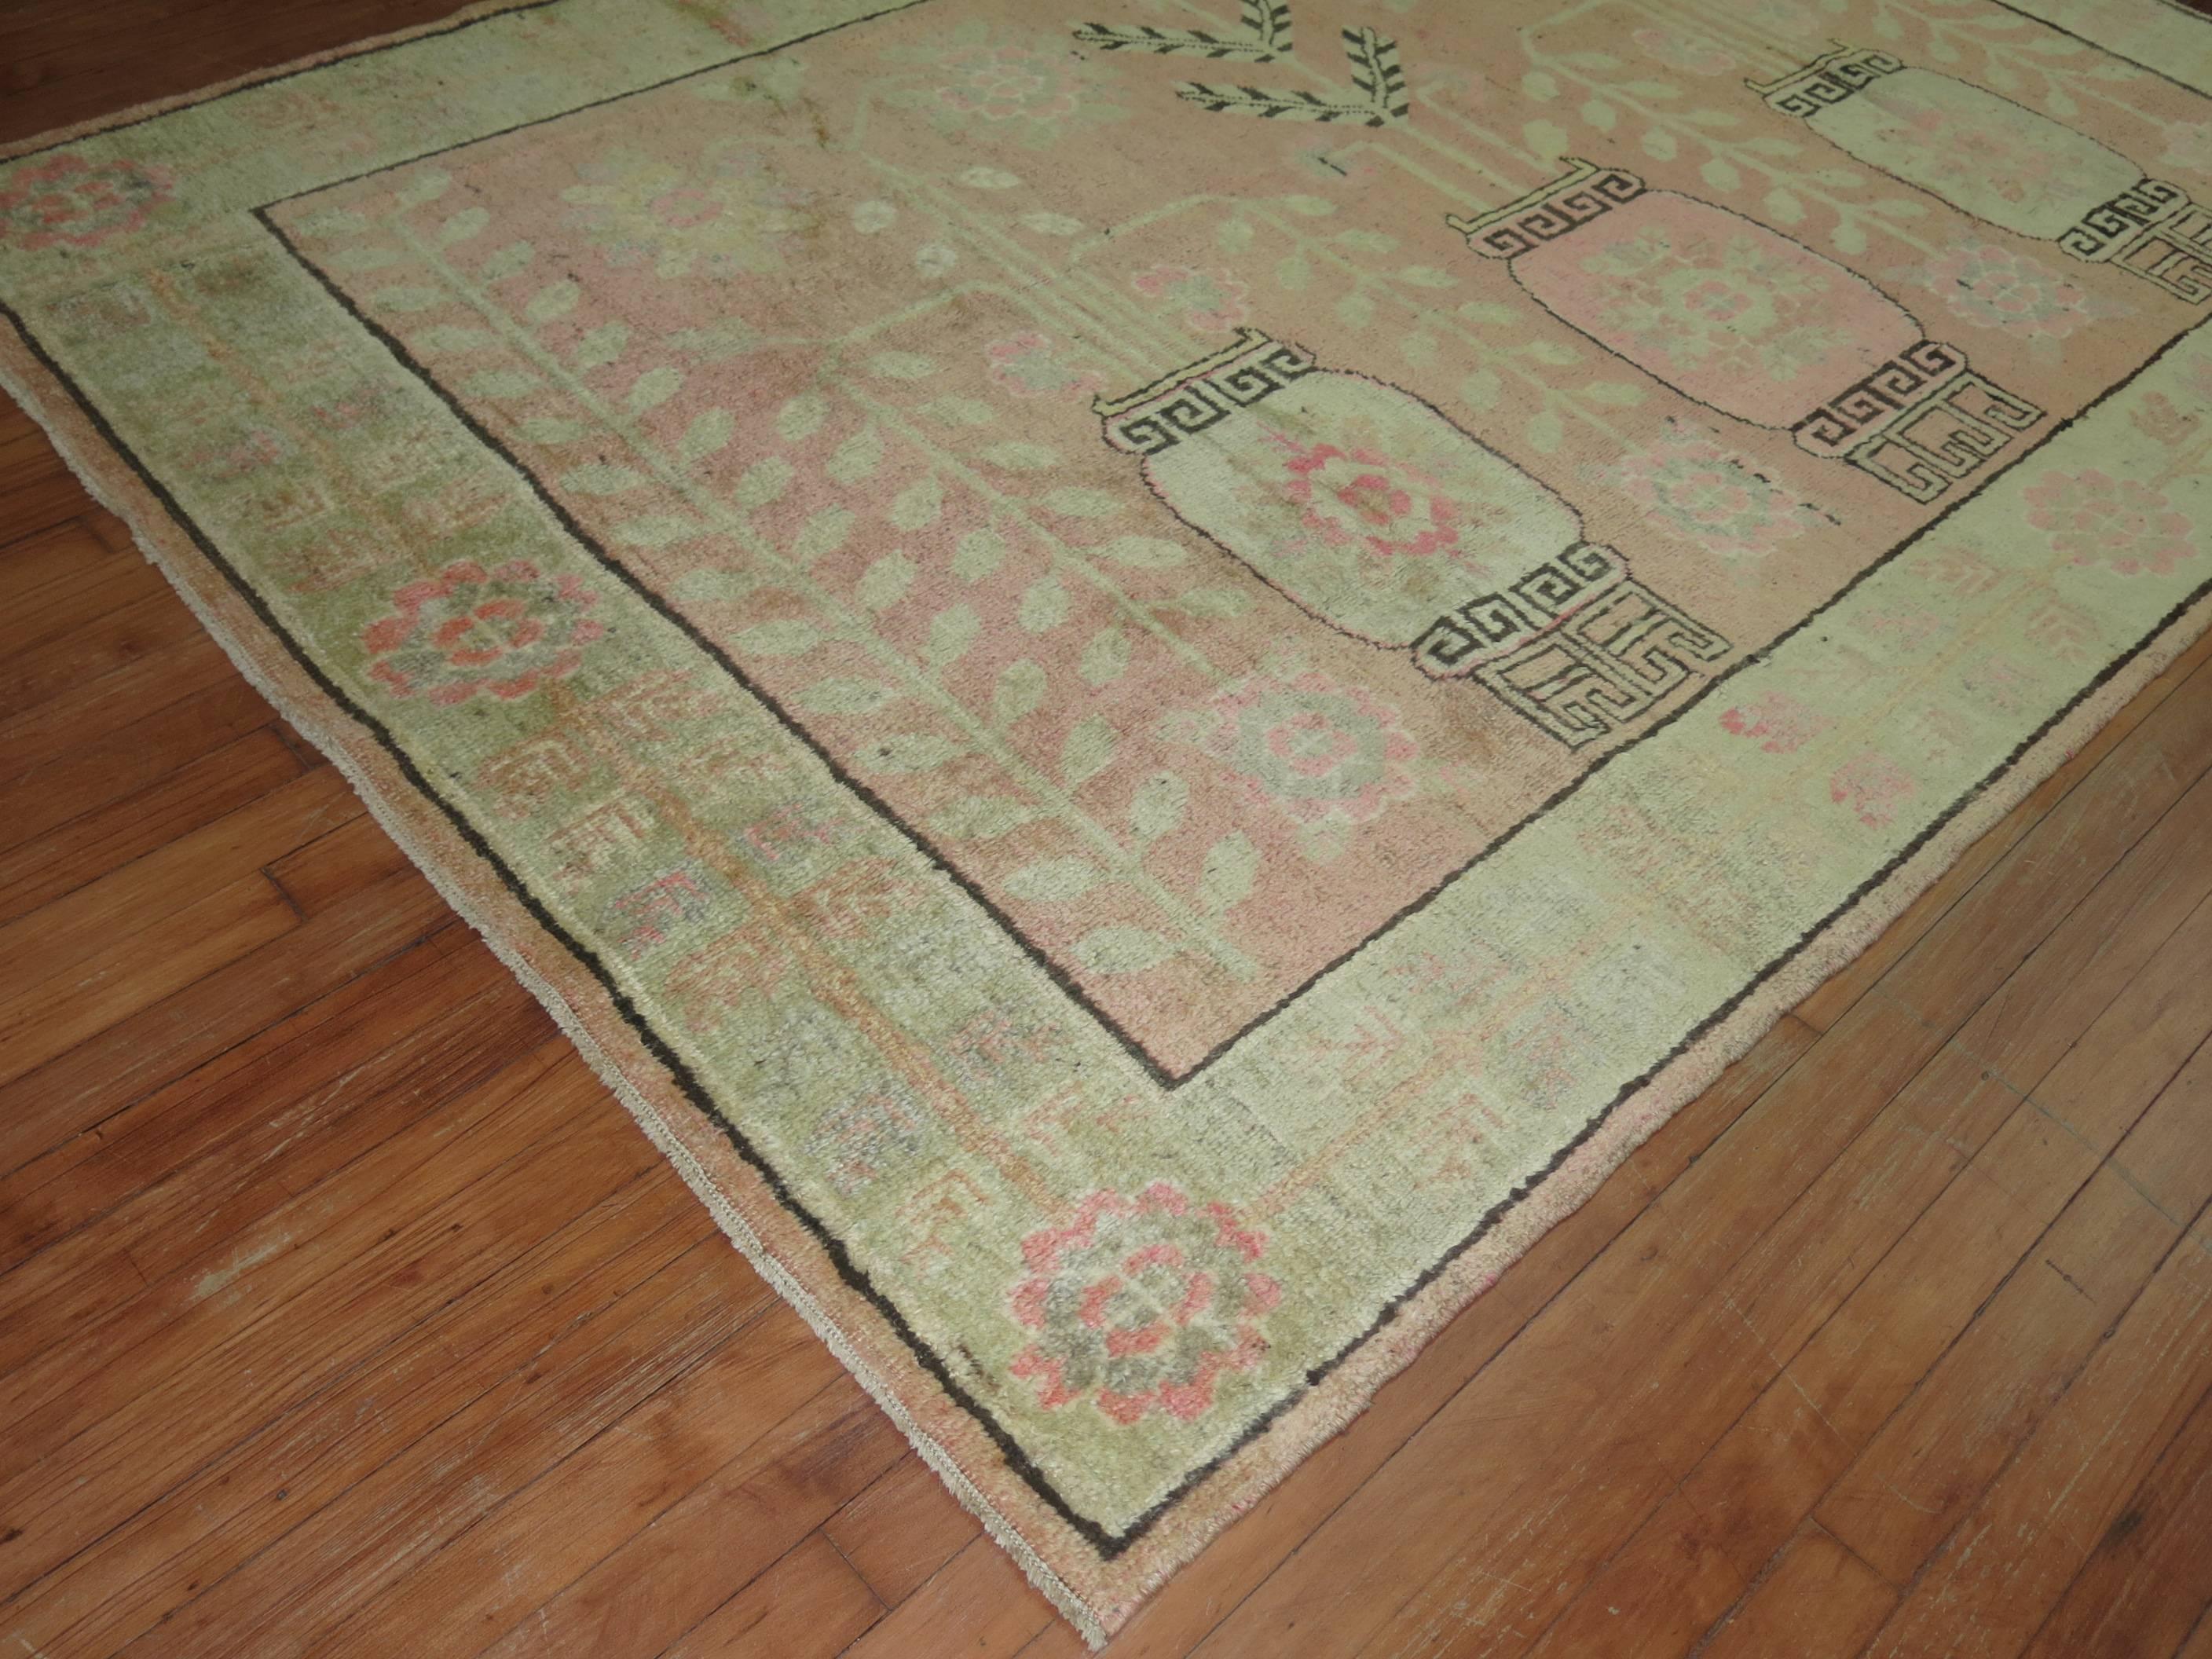 Einzigartiger Khotan-Teppich mit einem zartrosa Feld, das aus einem Blumenvasenmotiv und einer zartgrünen Bordüre besteht.